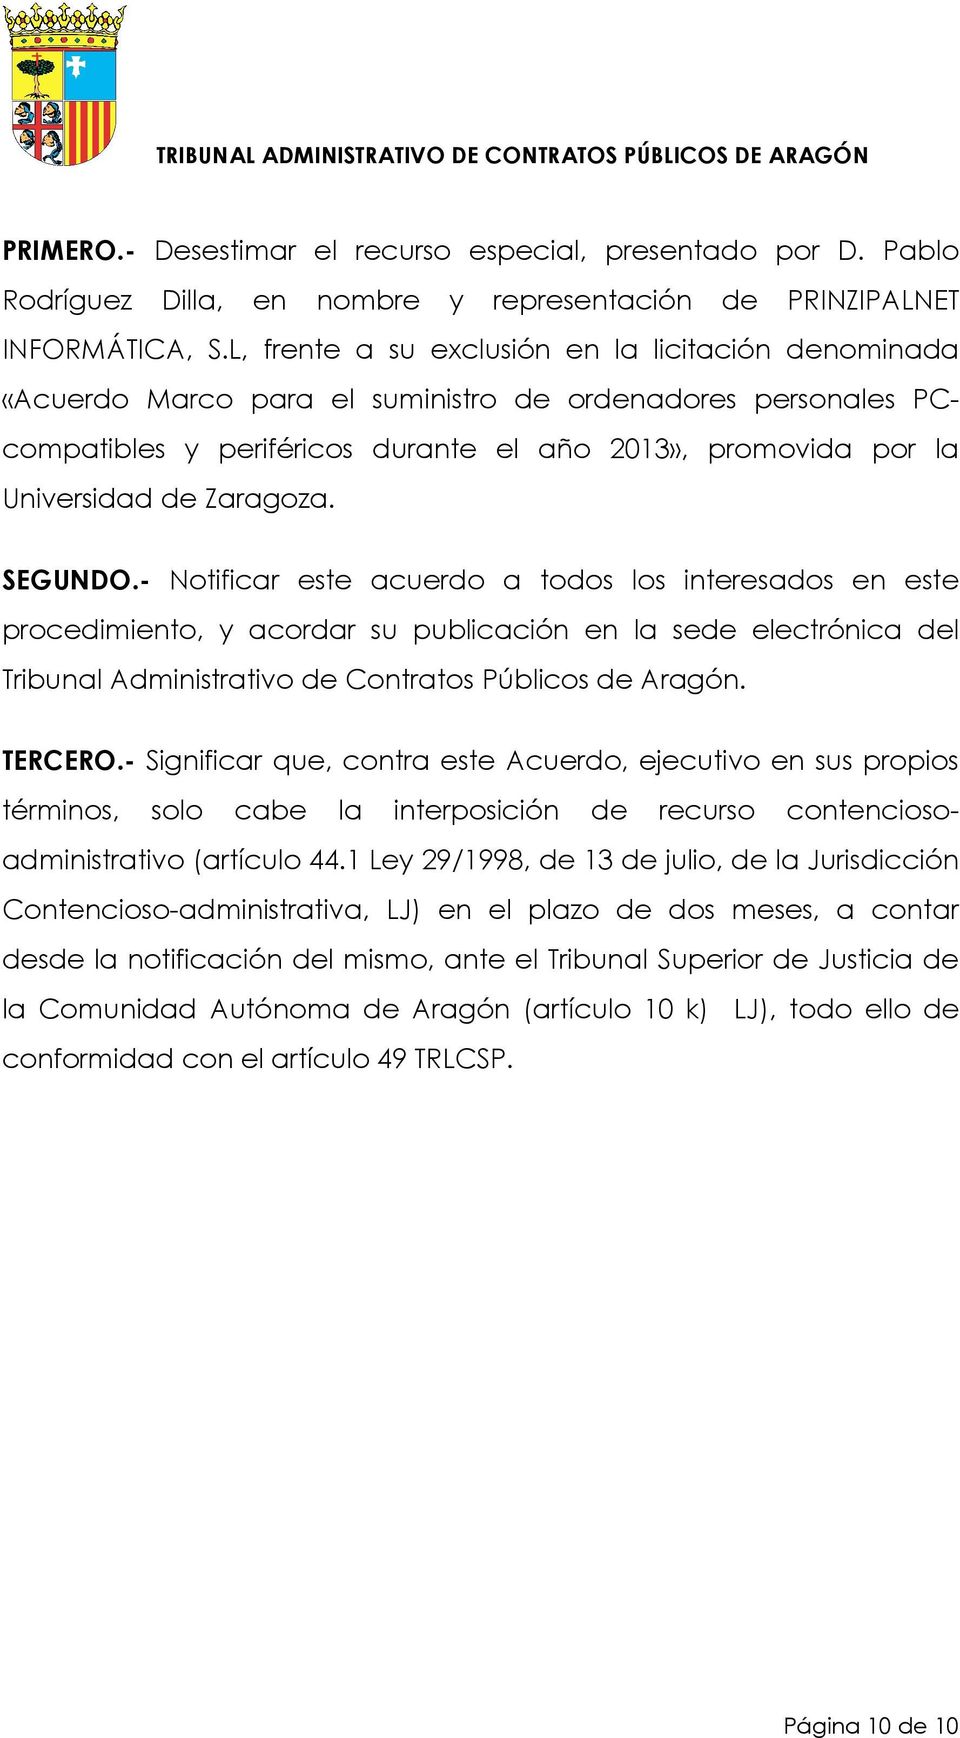 Zaragoza. SEGUNDO.- Notificar este acuerdo a todos los interesados en este procedimiento, y acordar su publicación en la sede electrónica del Tribunal Administrativo de Contratos Públicos de Aragón.